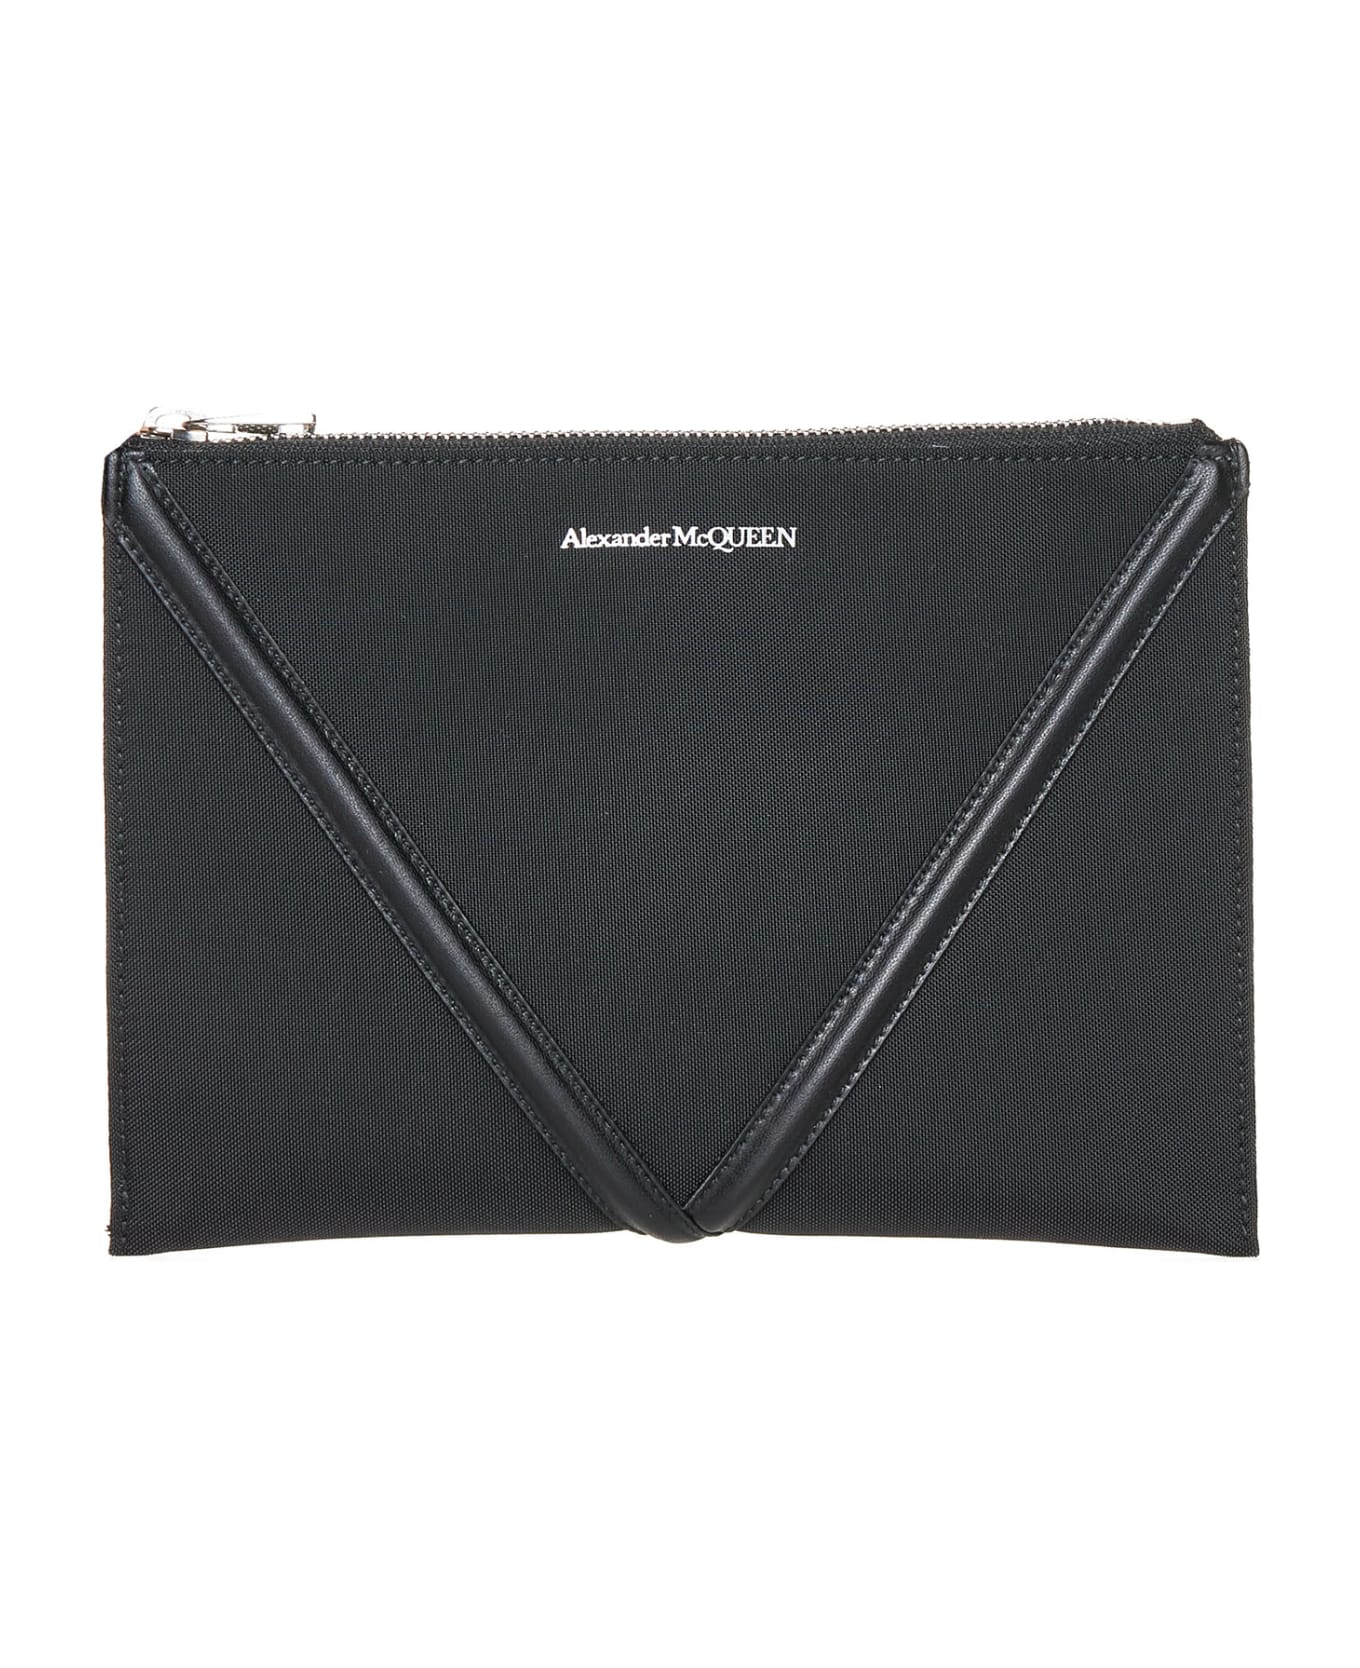 Alexander McQueen Clutch Bag - Black